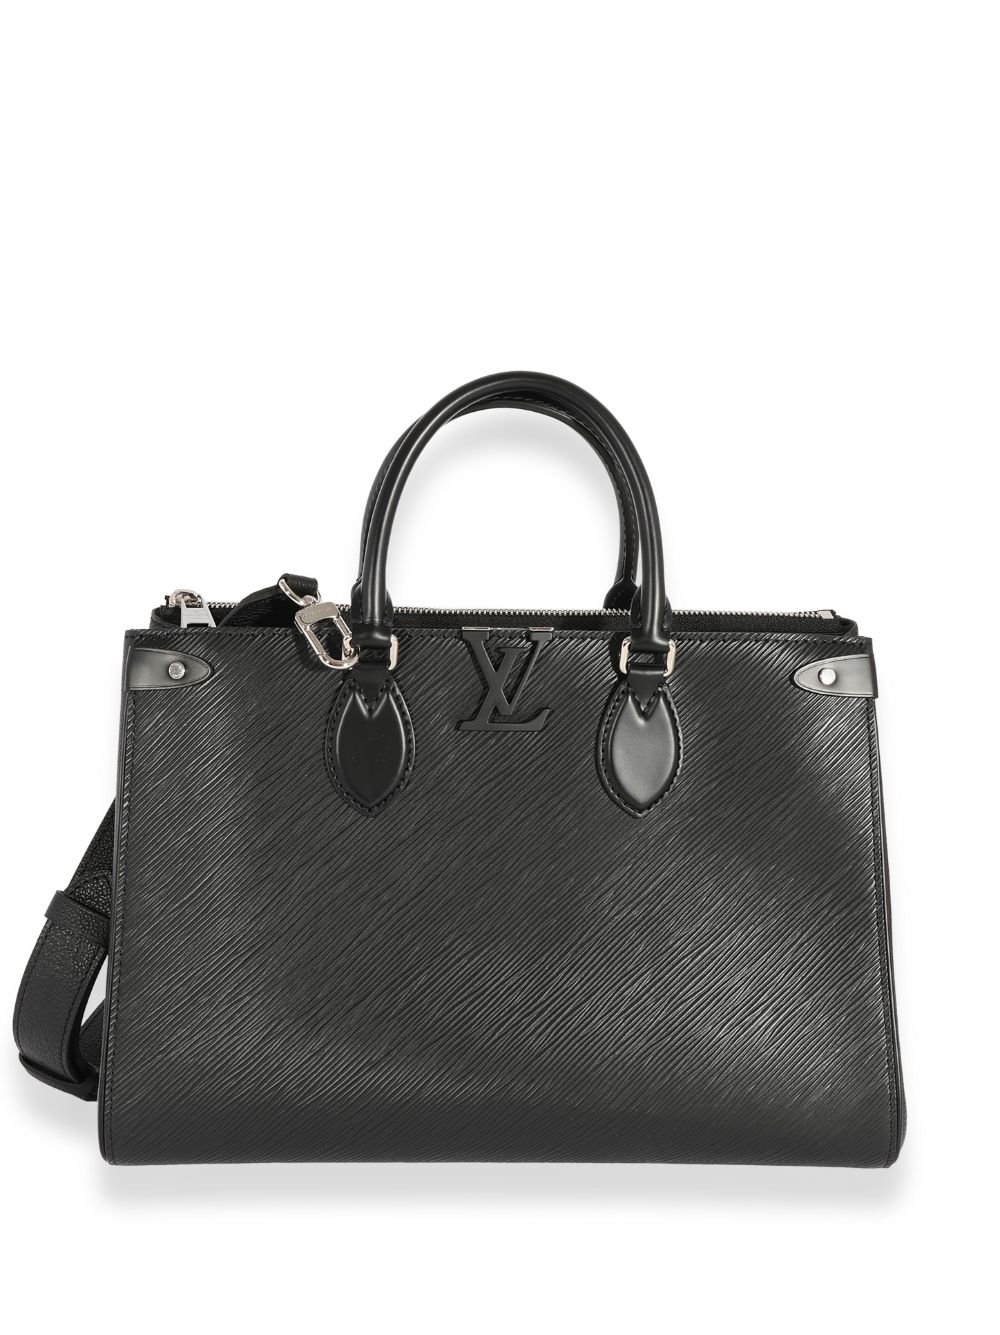 ParisLove72 - PRE ORDER Louis Vuitton GRENELLE MM BAG